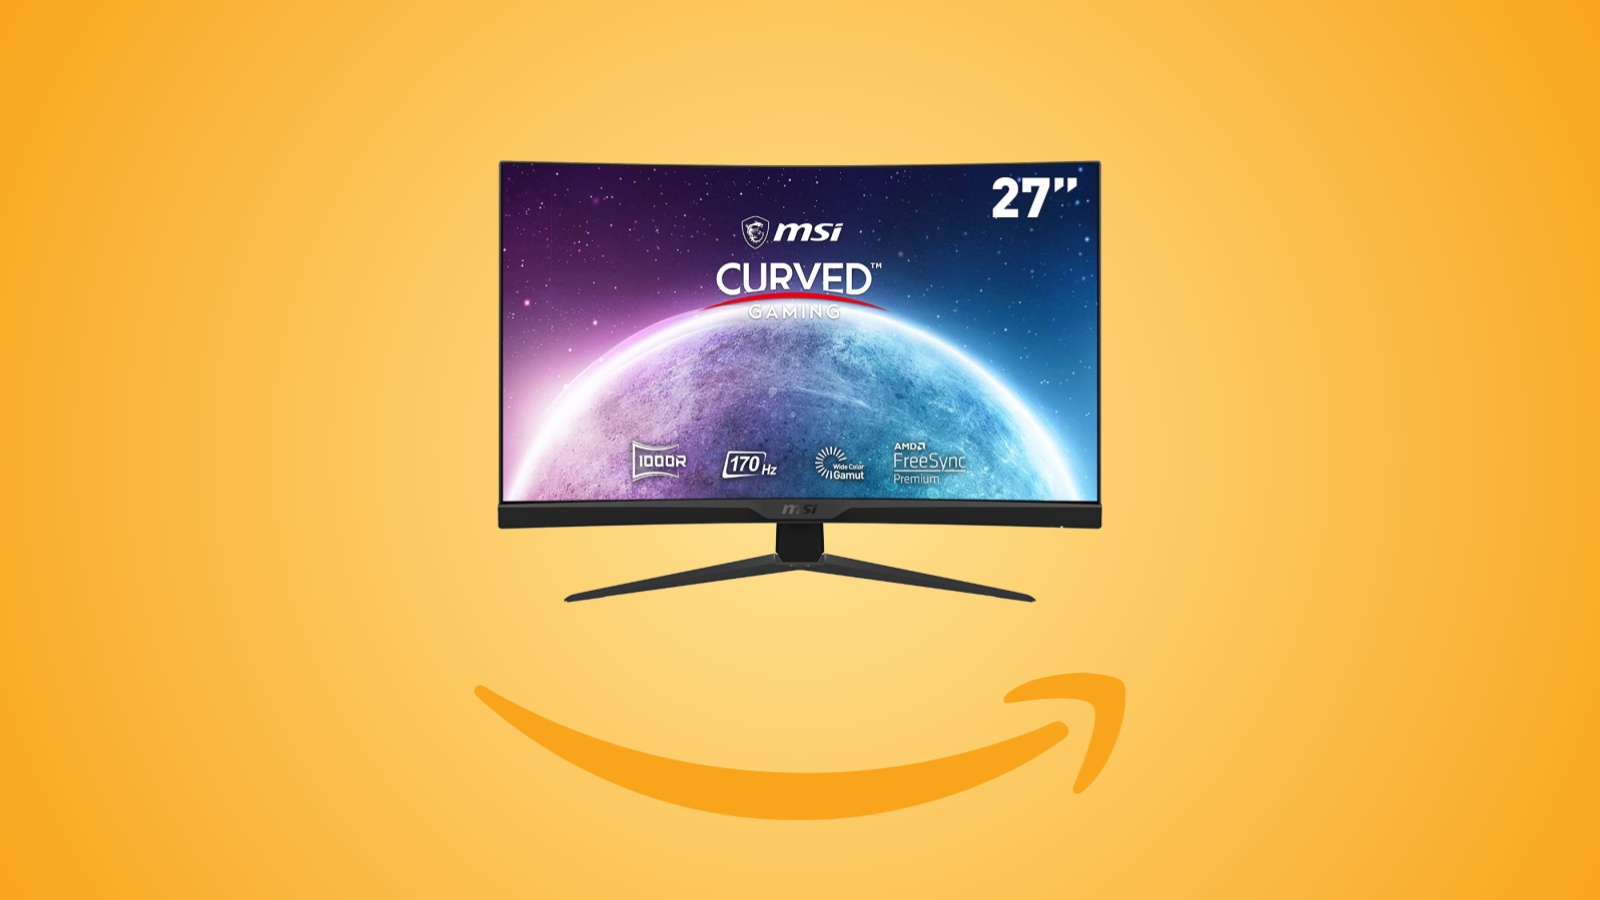 Offerte Amazon: monitor curvo MSI G272C da 27 pollici a 170 Hz, in sconto al prezzo minimo storico